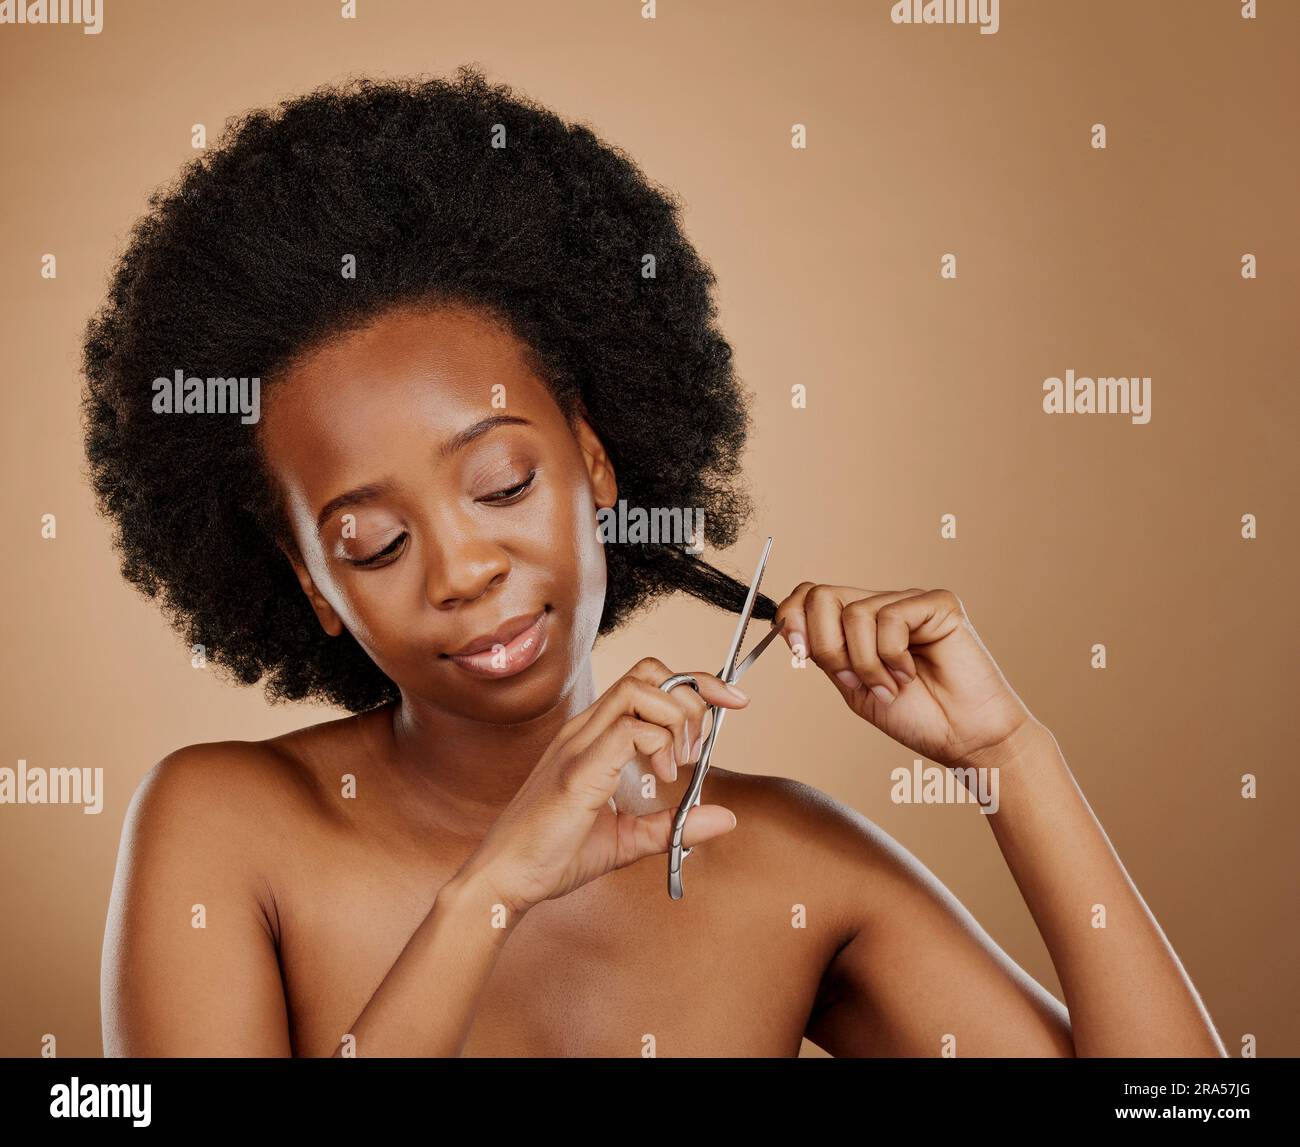 Afro-Haarschnitt, Schere und schwarze Frau mit Schönheitsproblem, Salonbehandlung oder Bruch. Kosmetik, junges und afrikanisches Mädchen oder Model mit einem Werkzeug zum Schneiden Stockfoto